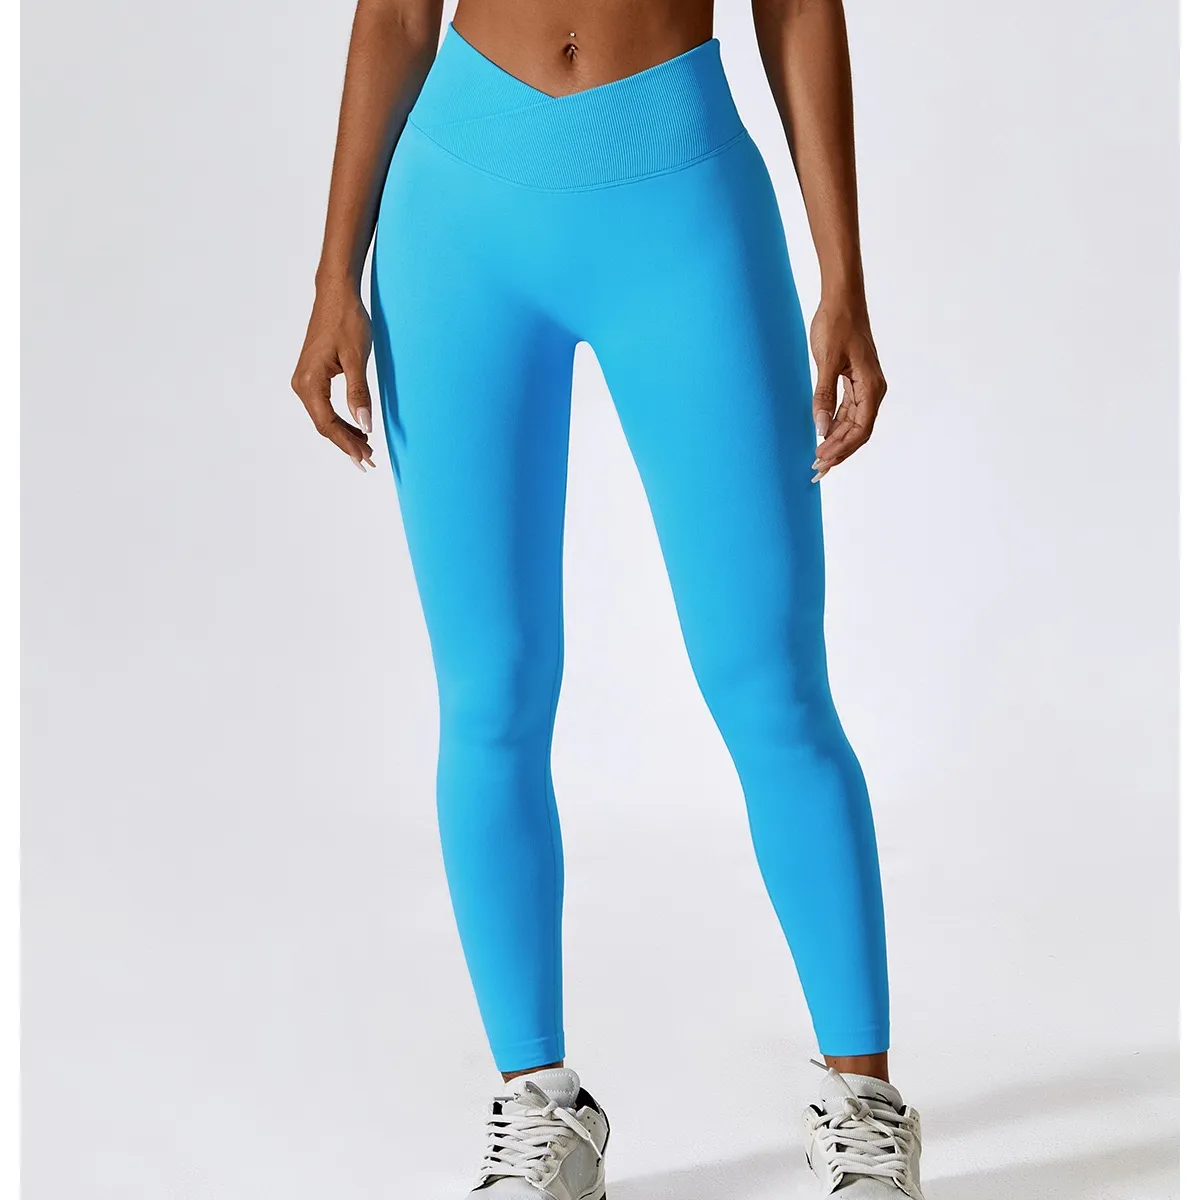 Legging olahraga wanita ukuran Plus, Legging olahraga Yoga, celana Fitness Gym, celana ketat pinggang tinggi potongan bentuk V untuk wanita